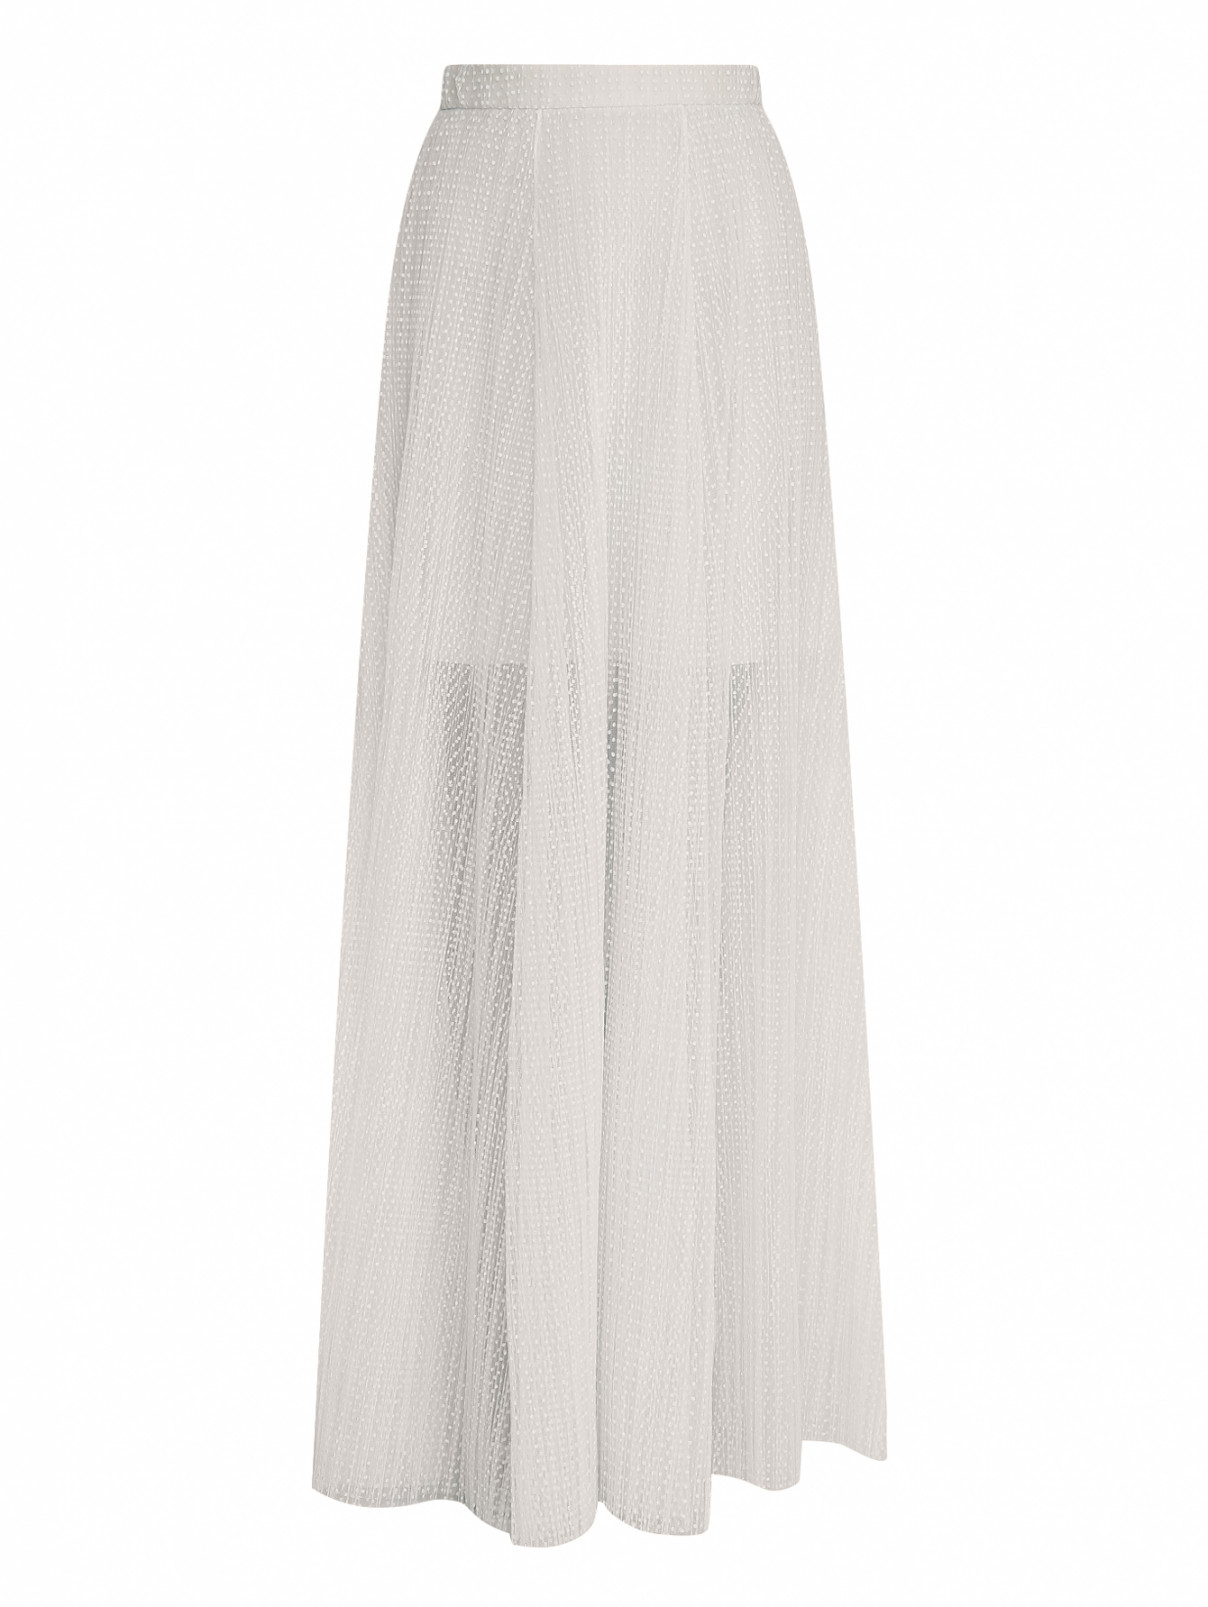 Полупрозрачная юбка-макси с узором "горох" A La Russe  –  Общий вид  – Цвет:  Белый